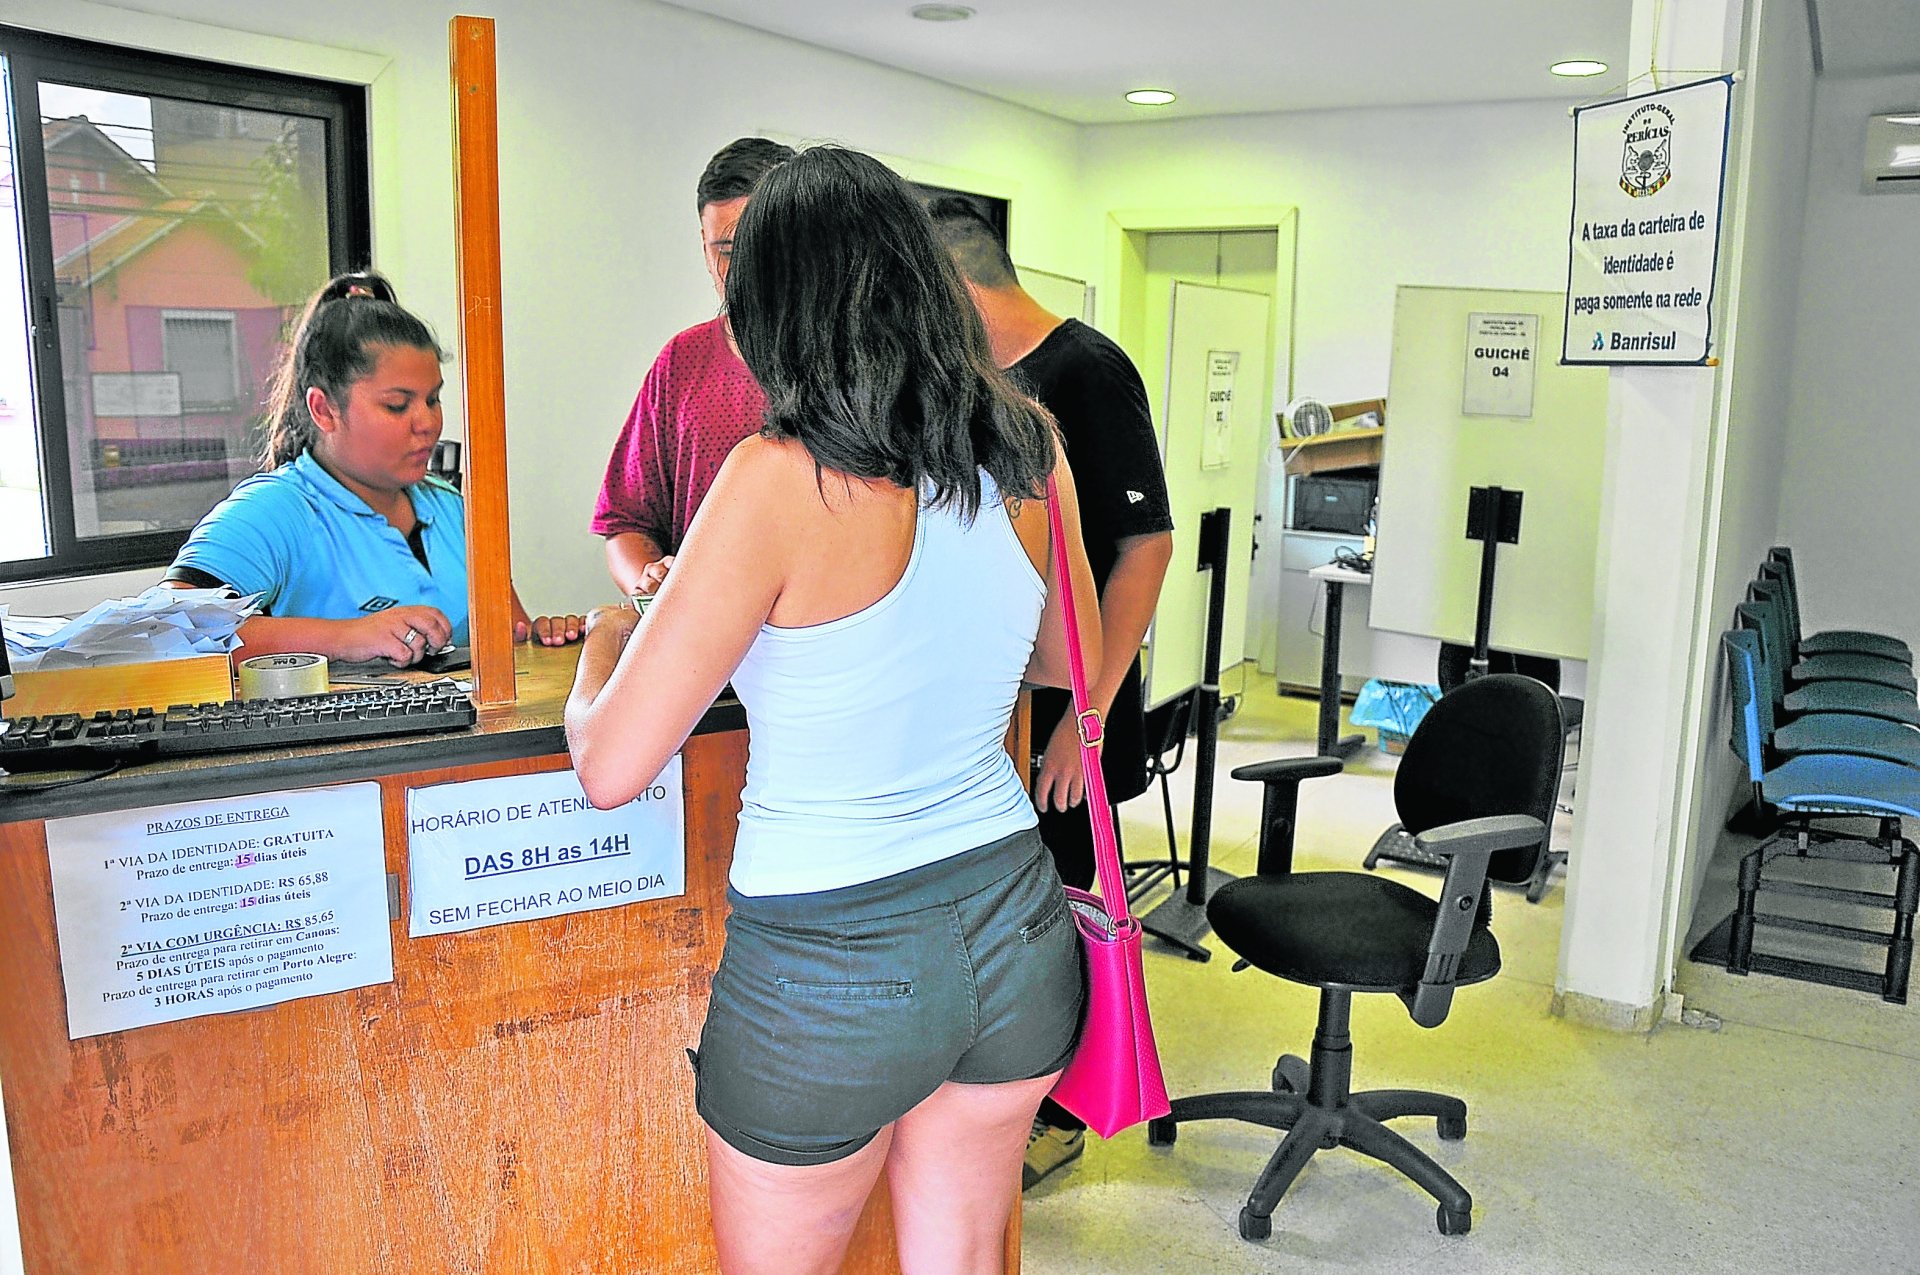 IGP deixa de atender o público e produzir carteiras de identidade em Canoas  - Canoas - Diário de Canoas